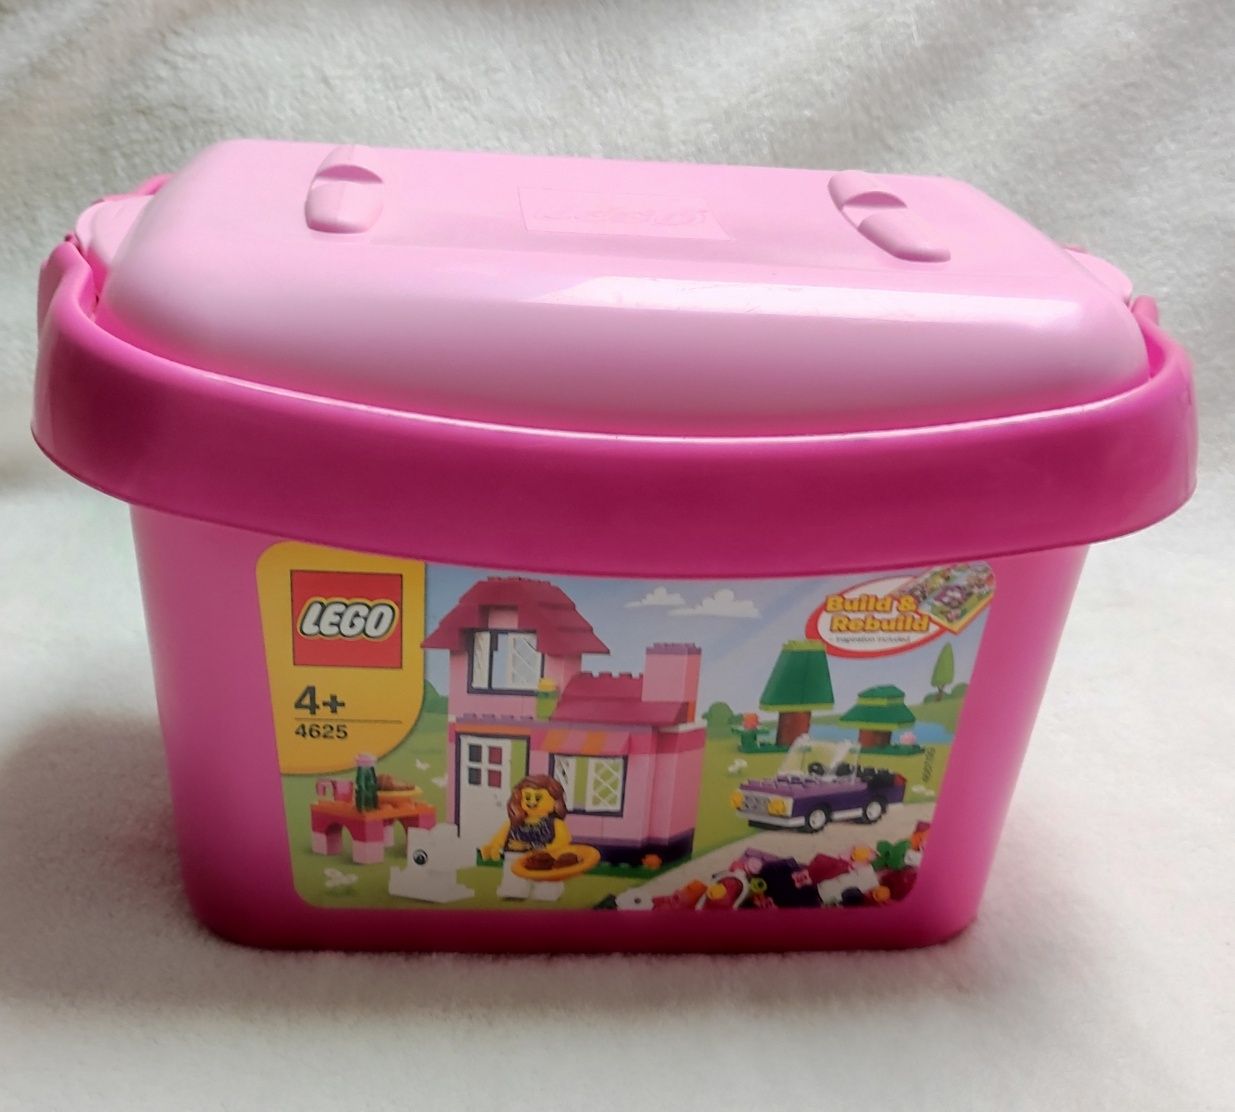 LEGO pudełko plastikowe do przechowywania